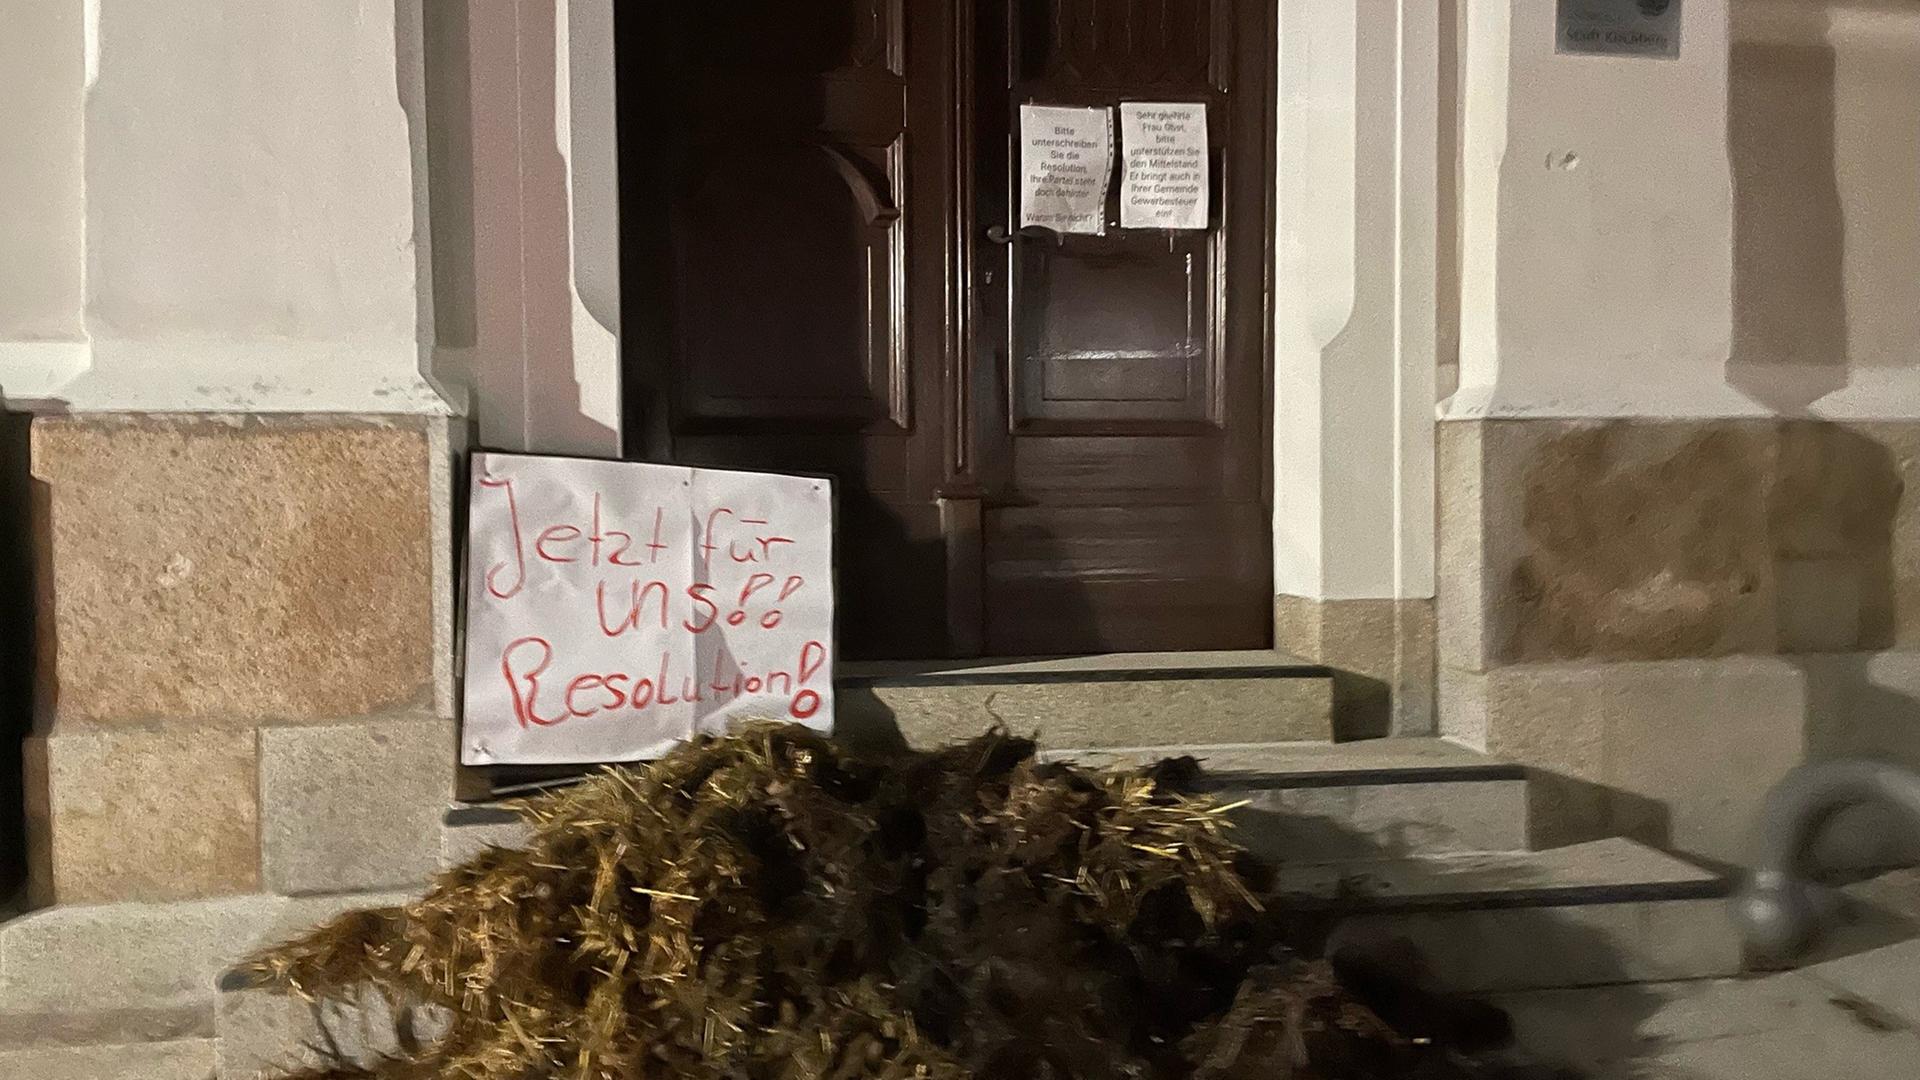 Ein Misthaufen liegt vor dem Rathaus der Stadt. Auf einem Zettel steht "Jetzt für uns! Resolution".